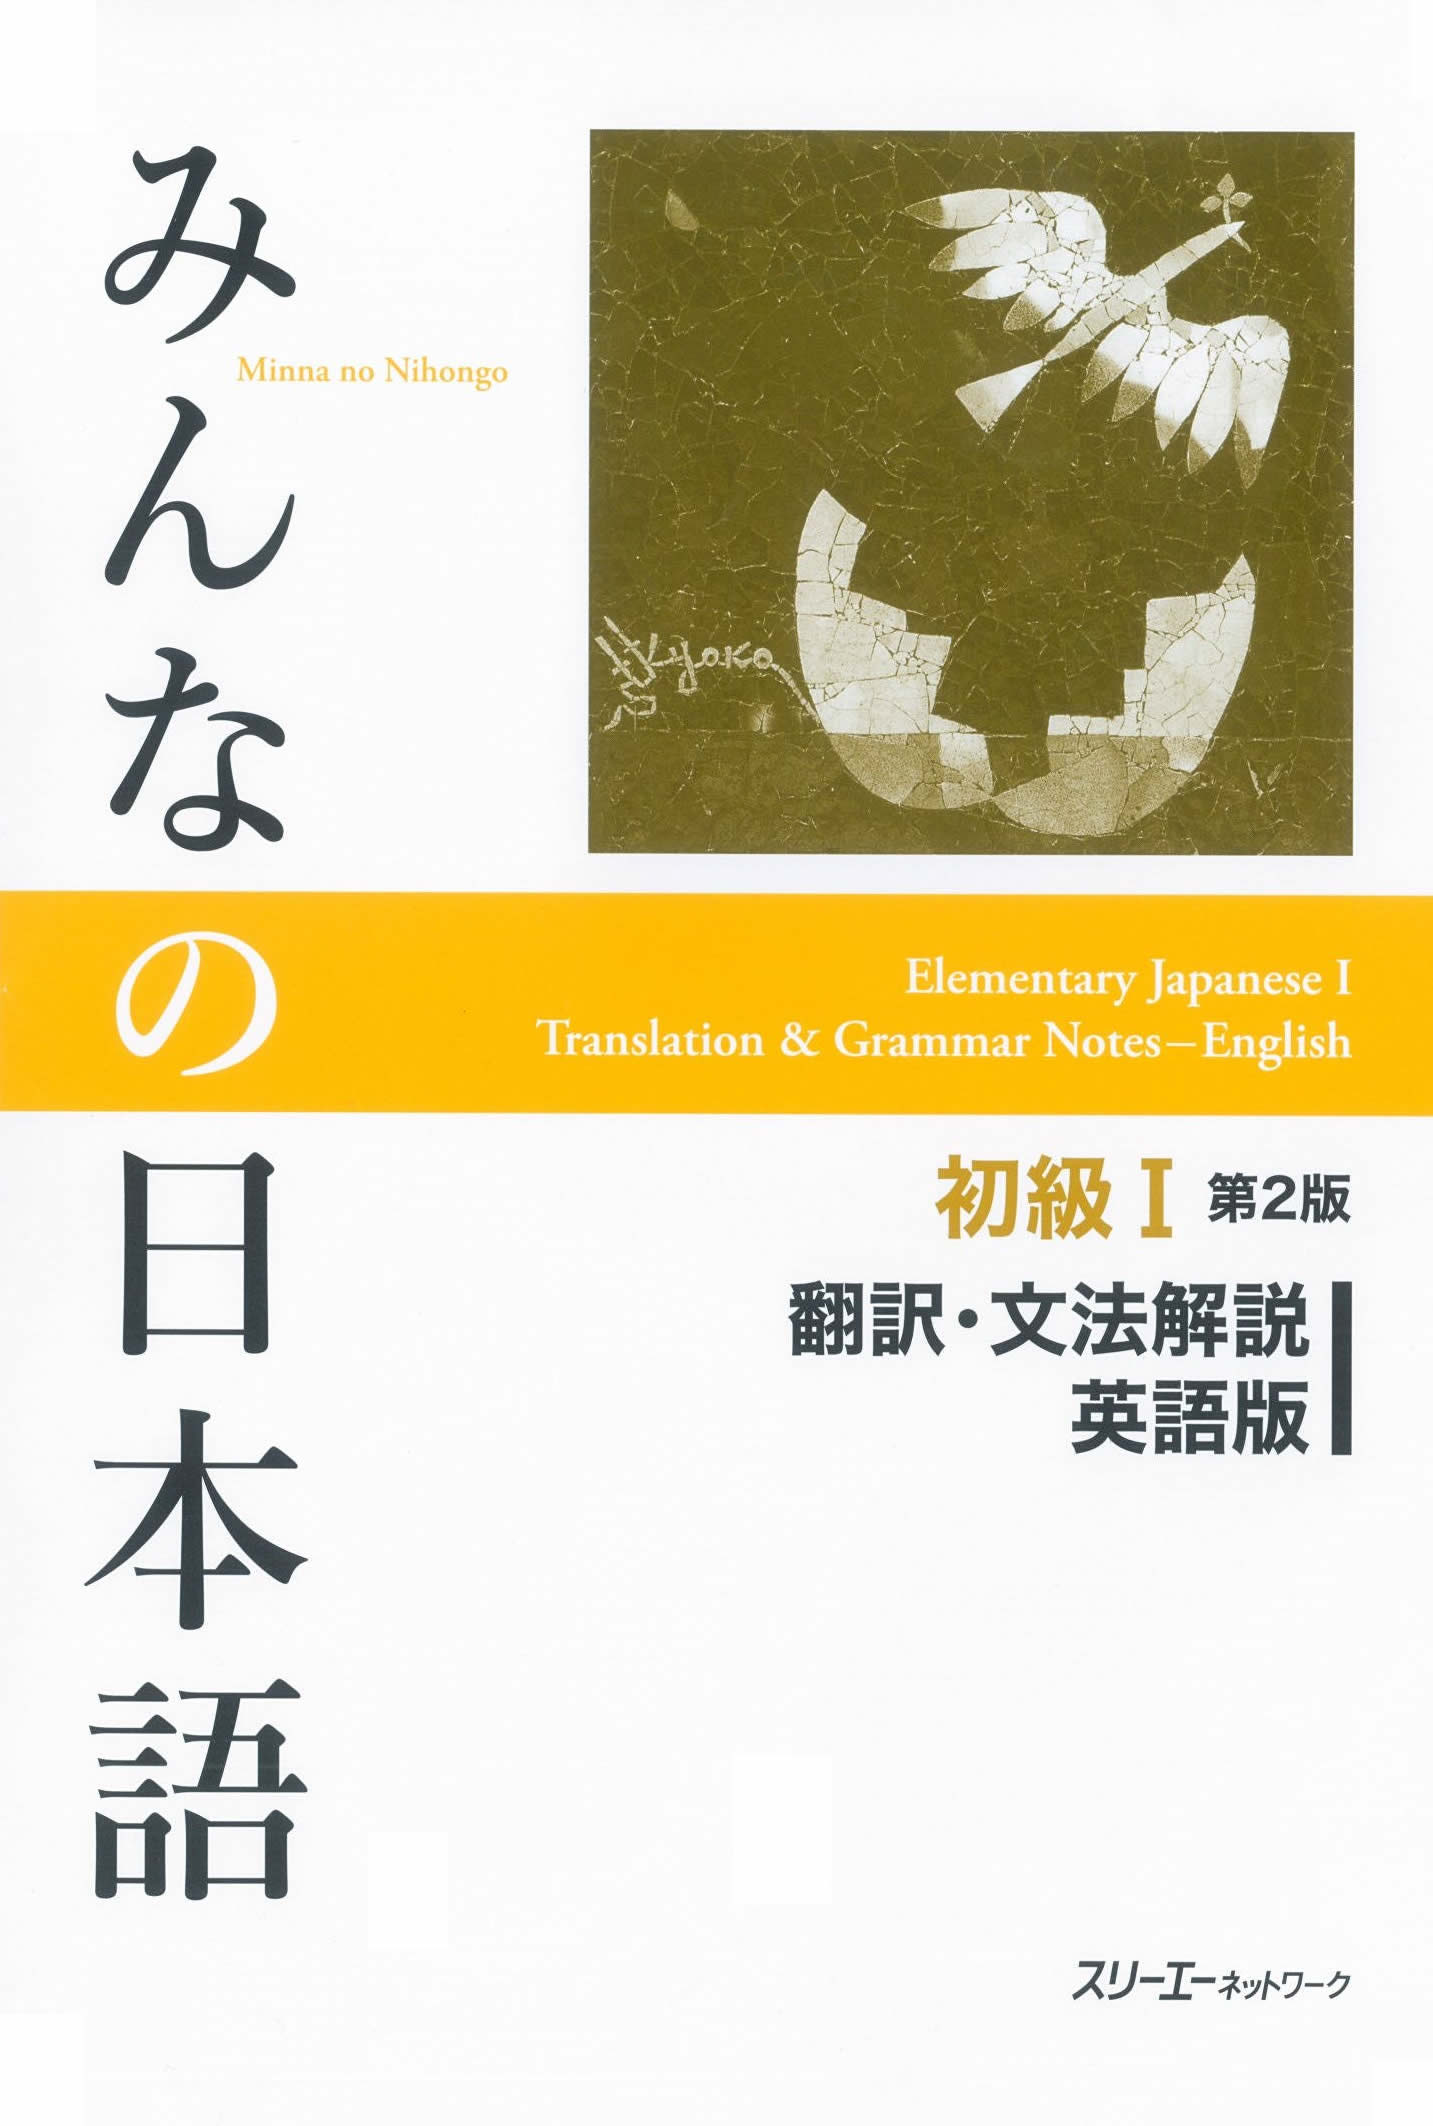 日本語教材コースデザインひとくちメモ　『みんなの日本語初級 翻訳・文法解説』のすすめ 学習の拠り所としての使い方